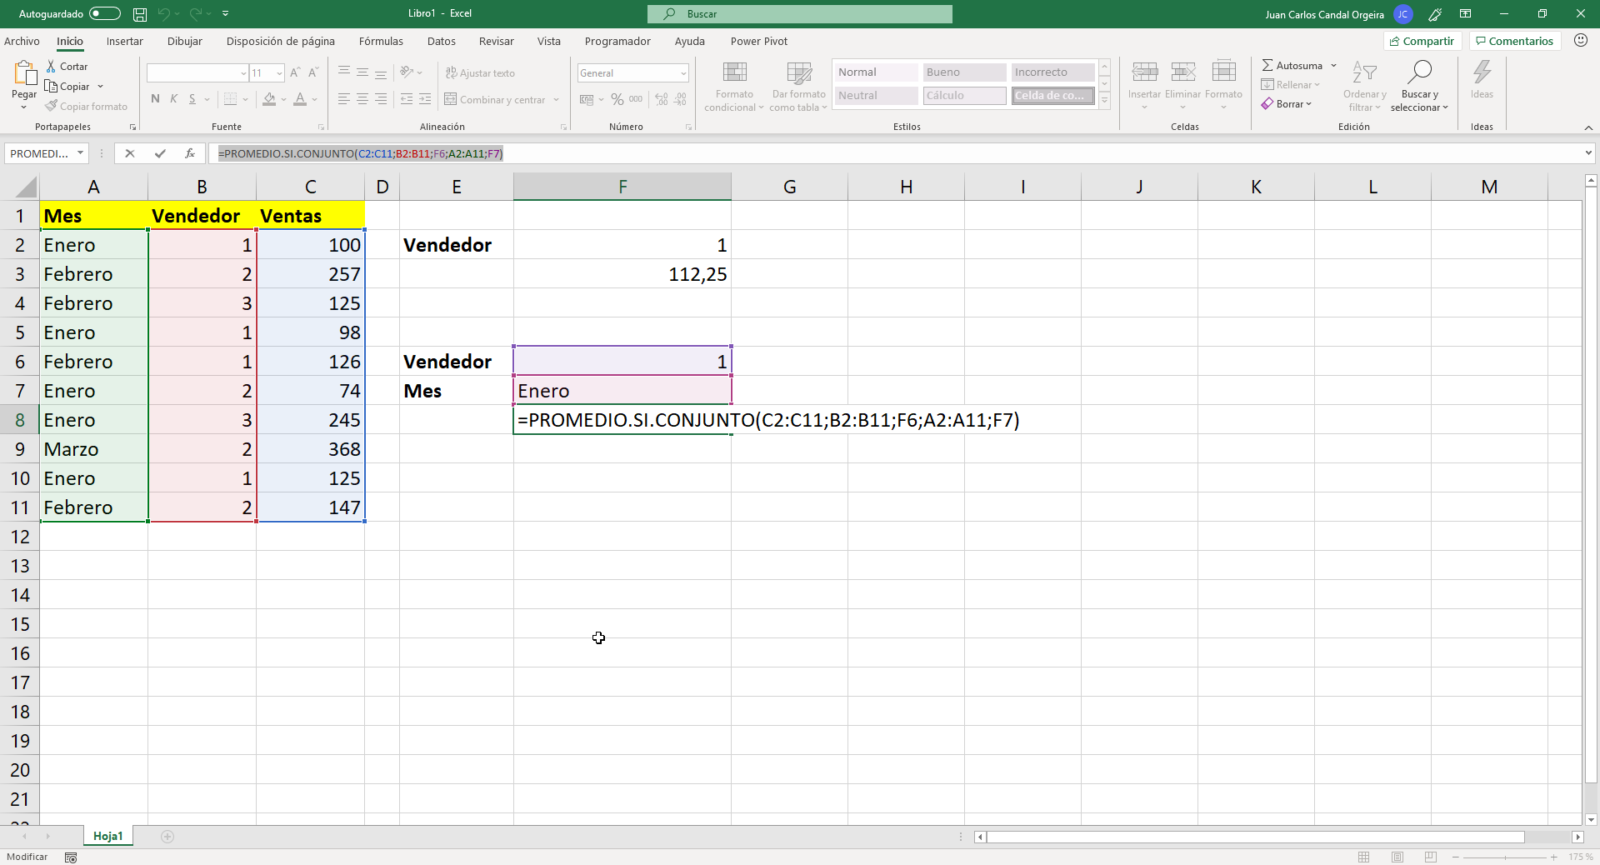 Función promedio.si.conjunto de Excel